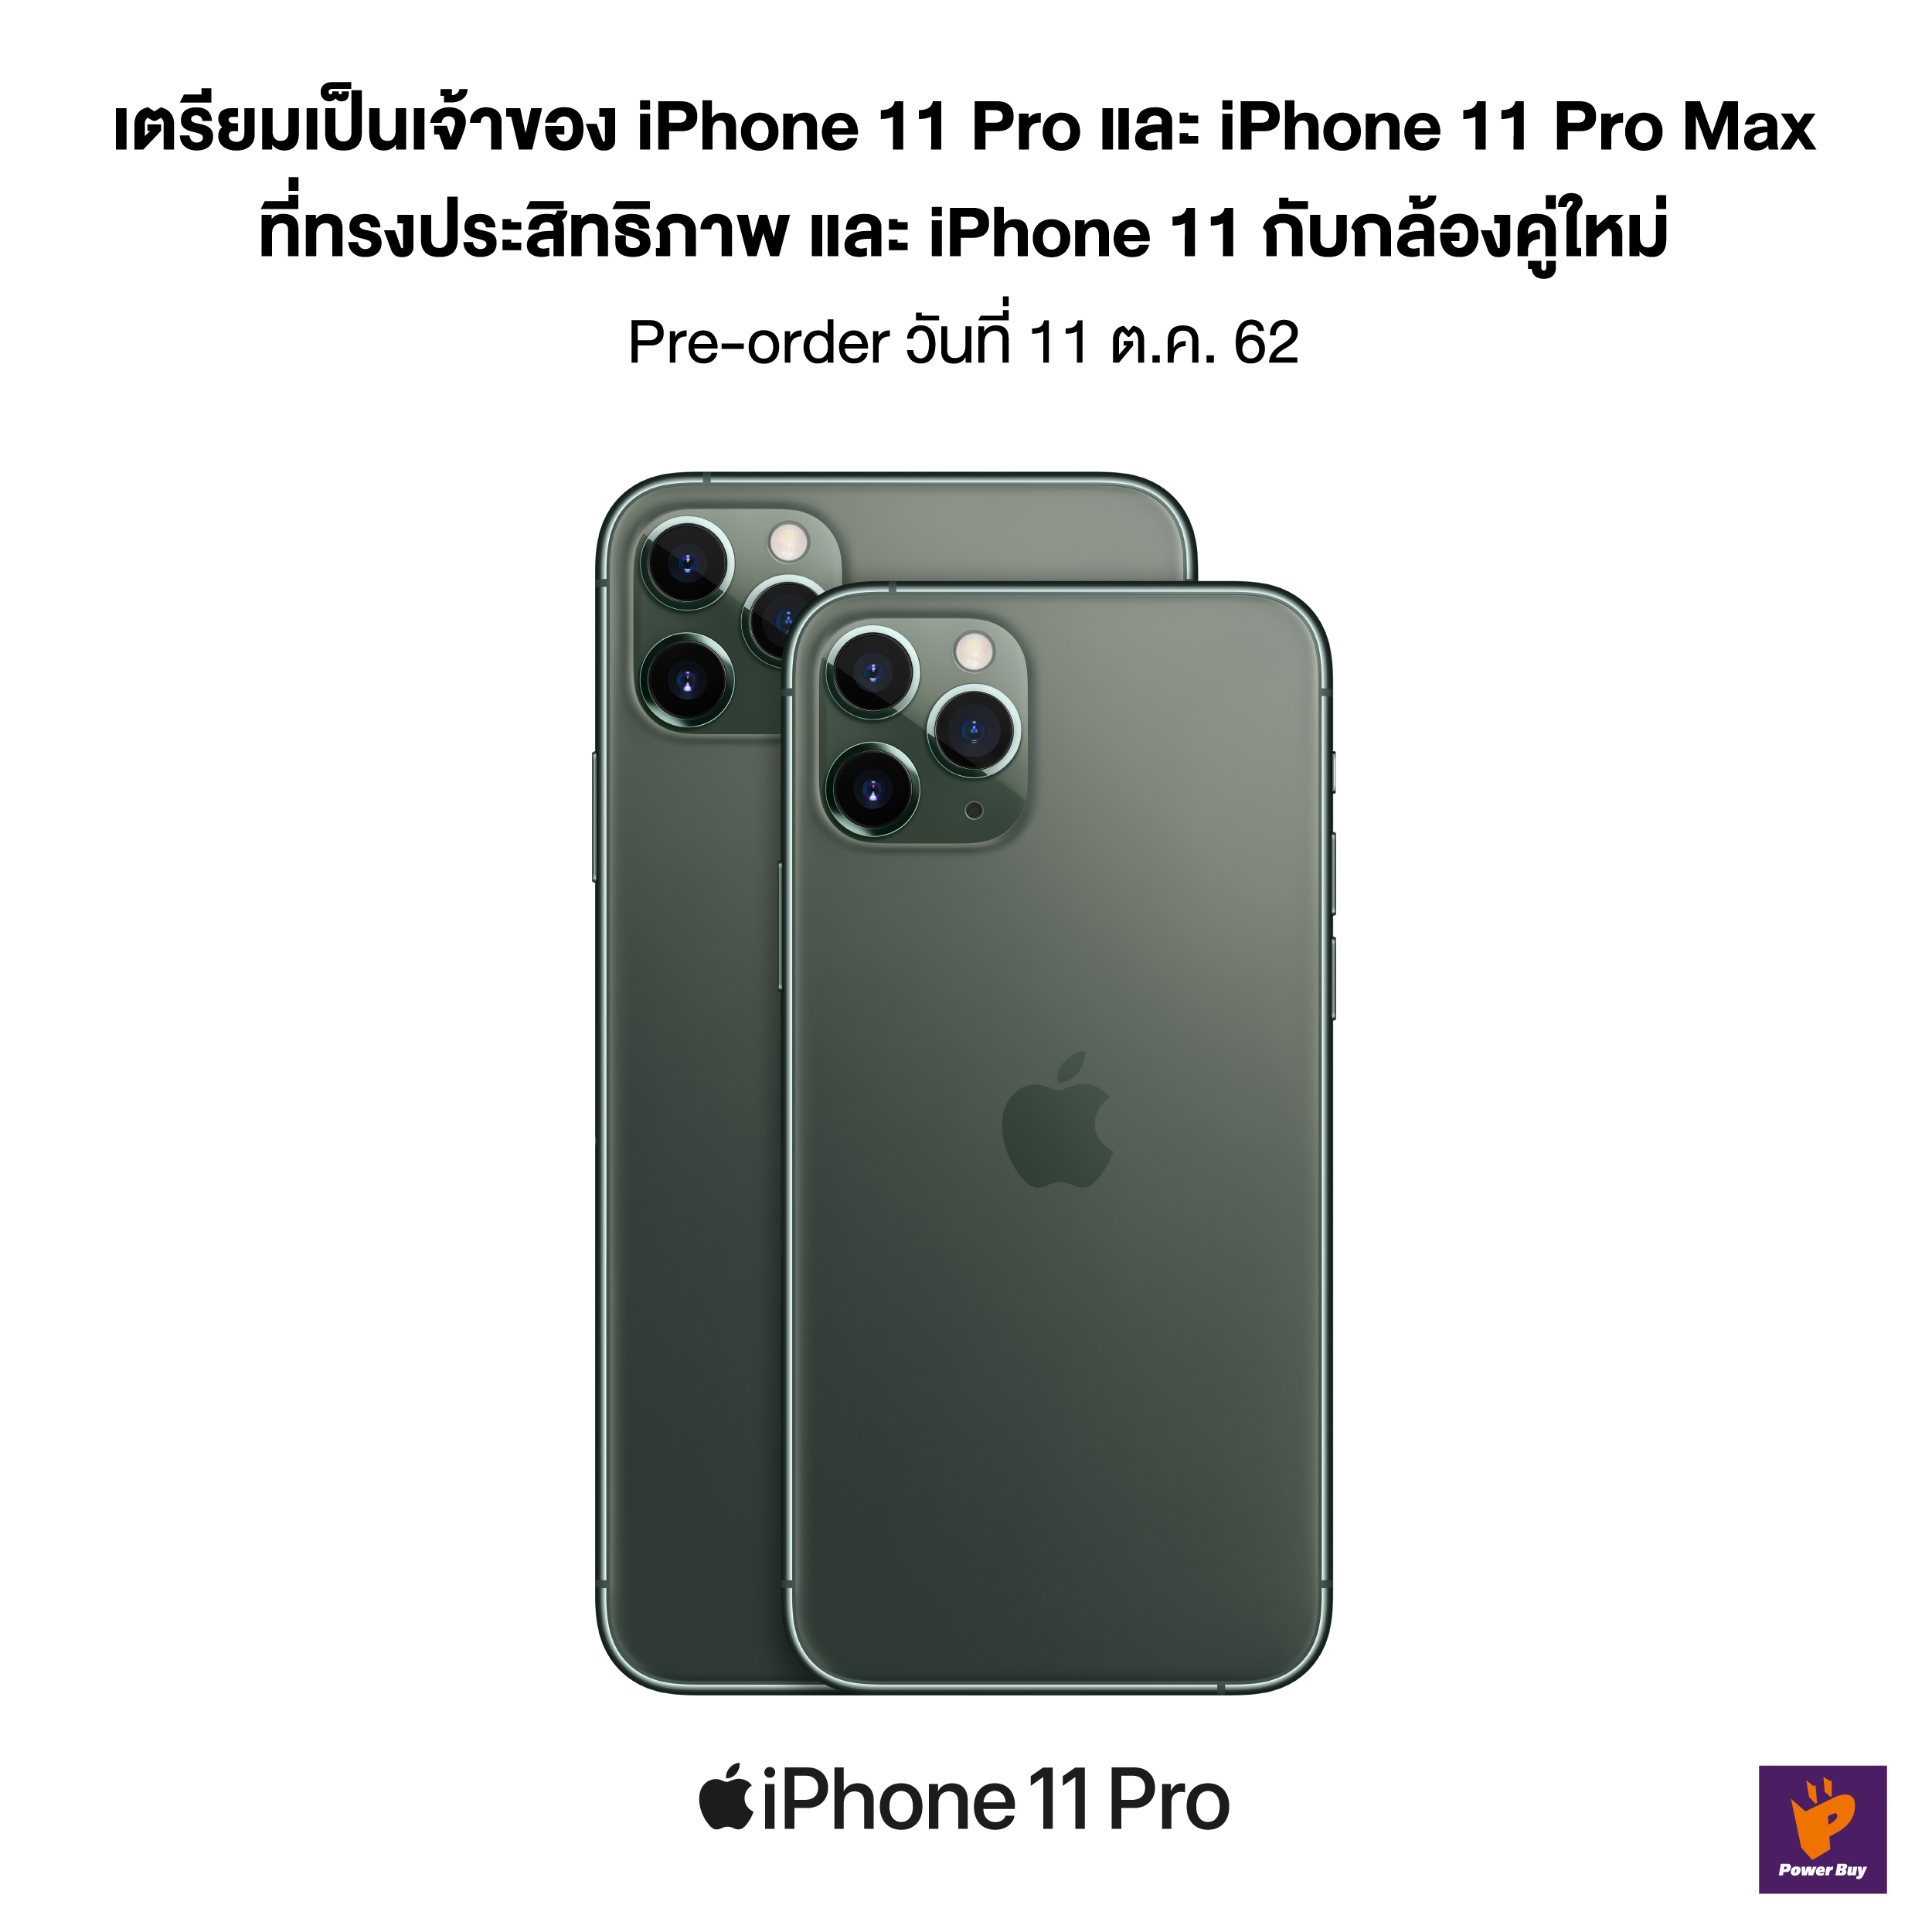 Power Buy เปิดจอง iPhone 11 Pro และ iPhone 11 Pro Max ในวันที่ 11 ตุลาคมนี้